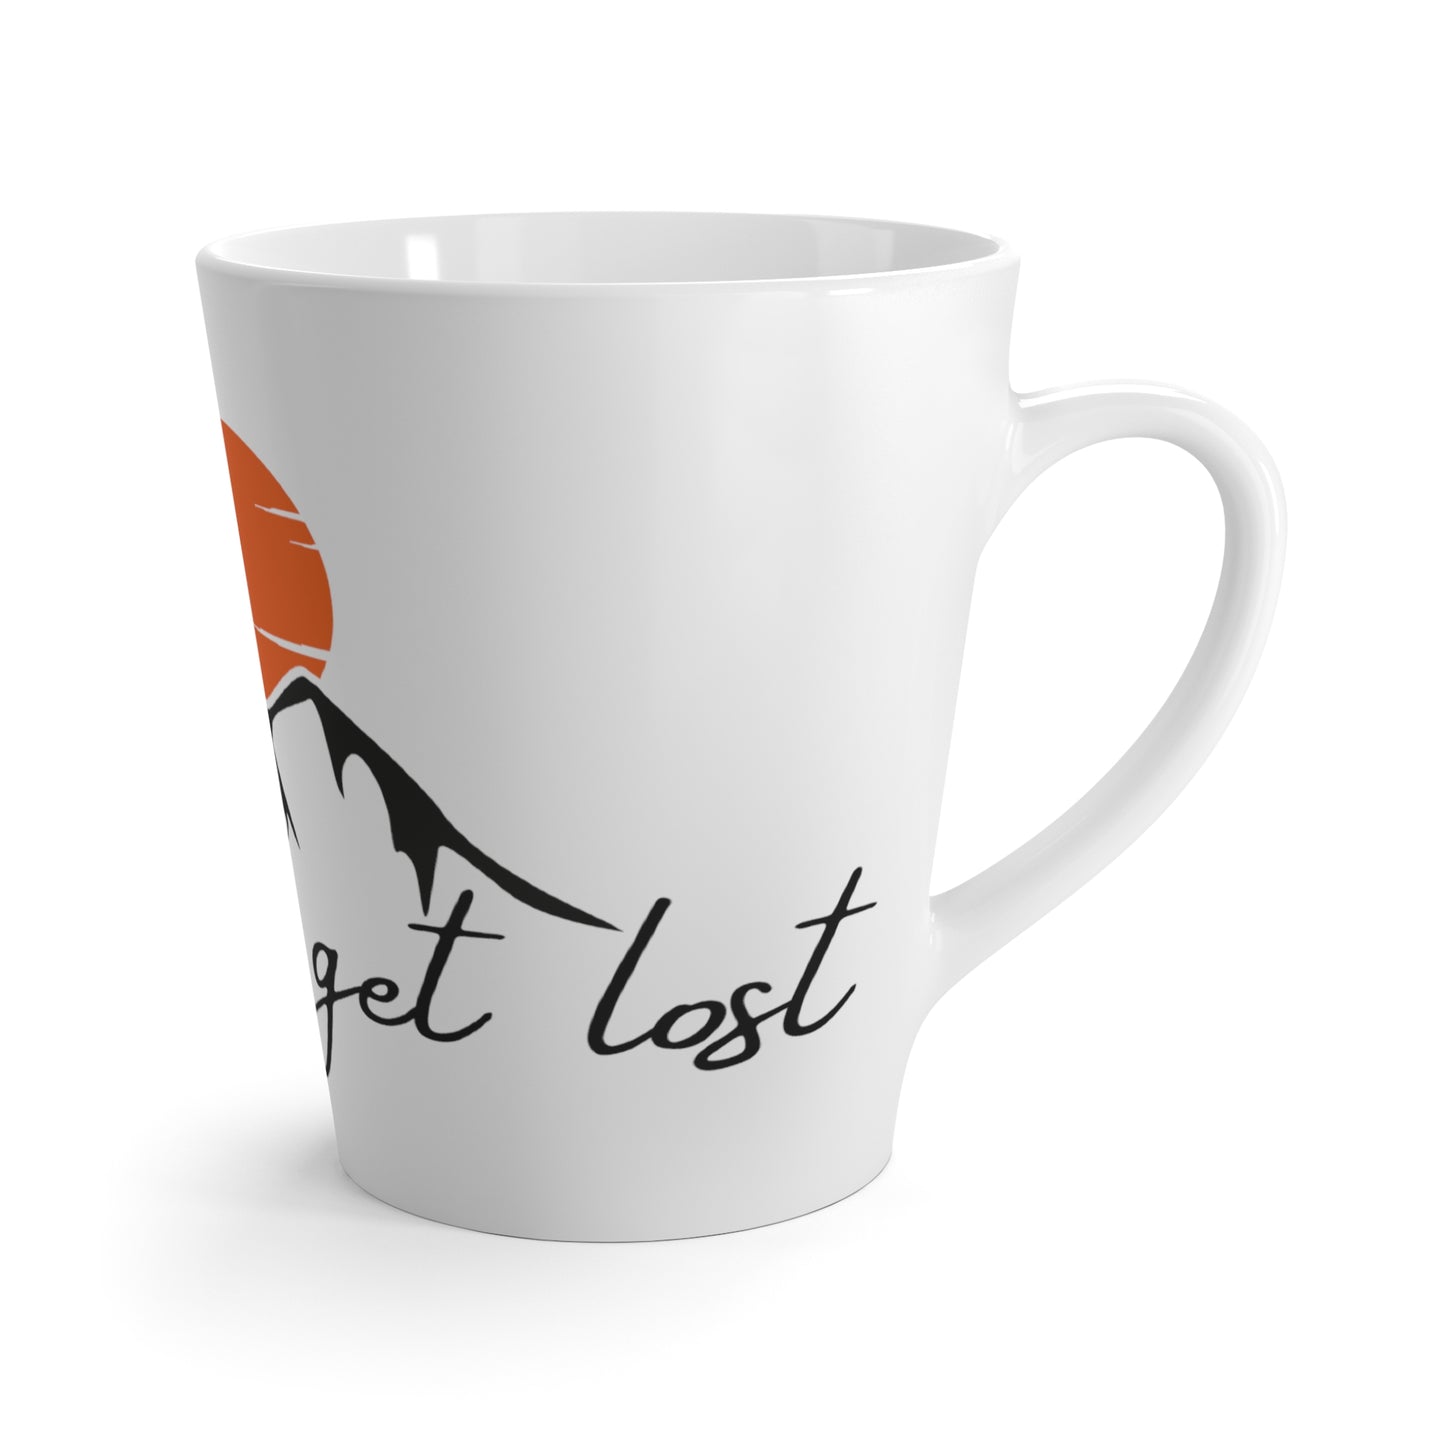 Get Lost 12oz Latte Mug